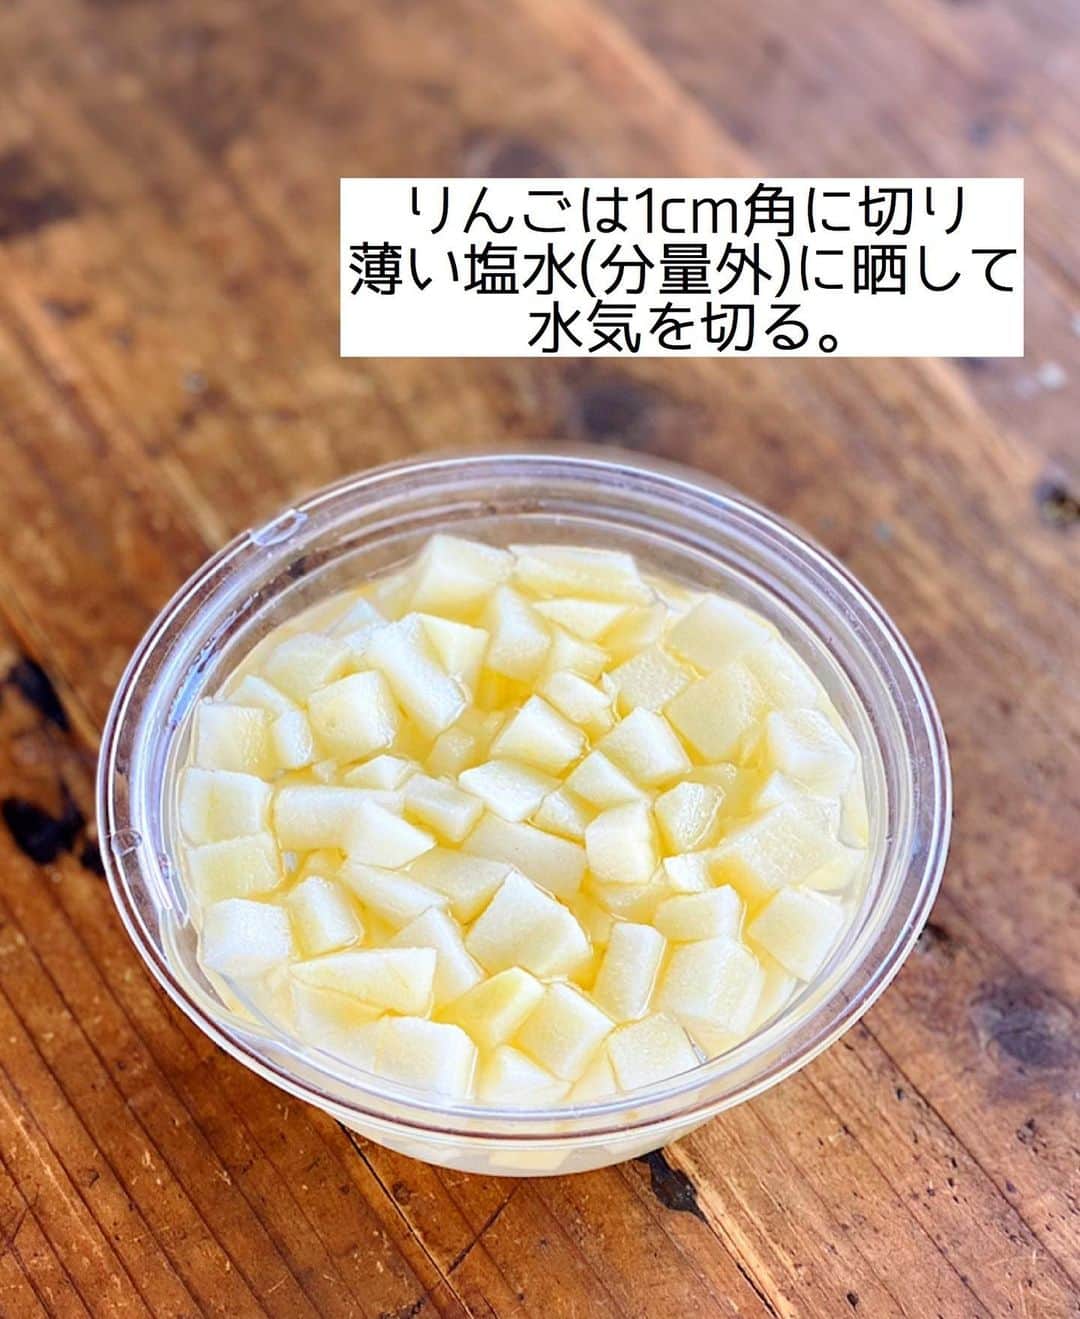 Mizuki【料理ブロガー・簡単レシピ】さんのインスタグラム写真 - (Mizuki【料理ブロガー・簡単レシピ】Instagram)「・﻿ 【#レシピ 】ーーーーーーー﻿ ホットケーキミックスで！﻿ りんごと紅茶のマフィン﻿ ーーーーーーーーーーーーー﻿ ﻿ ﻿ ﻿ おはようございます(*^^*)﻿ ﻿ 今日はホケミスイーツ☆﻿ \りんごと紅茶のマフィン/﻿ をご紹介させていただきます♩﻿ ﻿ 生地に紅茶を加えて﻿ フレッシュりんごを混ぜ込みました♡﻿ りんごは生のまま加えるから﻿ 超簡単に手間なく作れますよ〜！﻿ それでもちゃんと火が通り﻿ 煮たように柔らかく仕上がります♩﻿ ﻿ (昨日は『好きなお菓子』にご回答下さり﻿ ありがとうございました☺️💗)﻿ ﻿ ﻿ ﻿ ＿＿＿＿＿＿＿＿＿＿＿＿＿＿＿＿＿＿＿＿﻿ 【マフィン型1台(6個)分】﻿ りんご...1/2個(150g)﻿ ●卵...1個﻿ ●砂糖...大3﻿ ●牛乳...60ml﻿ ●サラダ油...60g﻿ ☆ホットケーキミックス...150g﻿ ☆紅茶(ティーバッグ)...4g﻿ ﻿ (準備)型にグラシンカップを敷く。オーブンを180度に予熱する。﻿ 1.りんごは皮を剥いて1cm角に切り、薄い塩水(分量外)に晒して水気を切る。﻿ 2.ボウルに●を入れて泡立て器でよく混ぜる。続けて☆も加え、ゴムベラさっくり混ぜる。﻿ 3.粉っぽさが残っている内に1を加えて更に混ぜ、型に注ぎ、予熱したオーブンで20分焼く。﻿ ￣￣￣￣￣￣￣￣￣￣￣￣￣￣￣￣￣￣￣￣﻿ ﻿ ﻿ ﻿ 《ポイント》﻿ ︎♦︎りんごの種類はお好みで♩﻿ ♦︎りんごは粉っぽさが残っている内に加え、全体に馴染むまで混ぜるだけでOK！﻿ ♦︎マフィンカップで焼いても♩﻿ ﻿ ﻿ ﻿ ﻿ ﻿ ﻿ ﻿ ﻿ ⭐️発売中⭐️3刷重版が決まりました😭﻿ 本当にありがとうございます(涙)﻿ _____________________________________﻿ \15分でいただきます/﻿ 📕#Mizukiの2品献立 📕﻿ (9月24日発売・マガジンハウス)﻿ ￣￣￣￣￣￣￣￣￣￣￣￣￣￣￣￣￣﻿ ﻿ 忙しい私たちには﻿ 2品くらいがちょうどいい！﻿ 『しんどくない献立、考えました』﻿ ￣￣￣￣￣￣￣￣￣￣￣￣￣￣￣￣﻿ ﻿ ーーーーーPART.1 ーーーーー﻿ 【Mizukiのお墨つき！２品献立ベスト10】﻿ 約15分でできる10献立をご紹介！﻿ メインは全部フライパン、副菜はレンチンor混ぜるだけ♡﻿ ﻿ ーーーーーPART.2 ーーーーー﻿ 【フライパンひとつ！今夜のメインおかず】﻿ 献立の主役になる肉や魚のおかず50品！﻿ Part3の副菜と組み合わせれば﻿ 献立のバリエーションが広がりますよ♩﻿ ﻿ ーーーーー PART.3 ーーーーー﻿ 【合間に作れる！ 野菜別かんたん副菜】﻿ レンチンor和えるだけの副菜レシピを﻿ 素材別にたっぷり収録♩﻿ ﻿ ーーーーー番外編ーーーーー﻿ 【ひとつで満足！ご飯＆麺】﻿ 【具だくさん！おかずスープ】﻿ 【オーブンいらずのおやつレシピ】﻿ ￣￣￣￣￣￣￣￣￣￣￣￣￣￣￣￣￣￣﻿ (ハイライトにリンク🔗あります💗)﻿ ﻿ ﻿ ﻿ ﻿ ＿＿＿＿＿＿＿＿＿＿＿＿＿＿＿＿＿＿﻿ レシピを作って下さった際や﻿ レシピ本についてのご投稿には﻿ タグ付け( @mizuki_31cafe )して﻿ お知らせいただけると嬉しいです😊💕﻿ ￣￣￣￣￣￣￣￣￣￣￣￣￣￣￣￣￣￣﻿ ﻿ ﻿ ﻿ ﻿ #ホットケーキミックス#ホケミ#紅茶マフィン#お菓子#Mizuki#簡単レシピ#時短レシピ#節約レシピ#料理#フーディーテーブル#マカロニメイト#おうちごはん#デリスタグラマー#料理好きな人と繋がりたい#食べ物#料理記録#おうちごはんlover#写真好きな人と繋がりたい#foodpic#cooking#recipe#lin_stagrammer#foodporn#yummy#f52grams#りんごと紅茶のマフィンm」11月22日 9時43分 - mizuki_31cafe